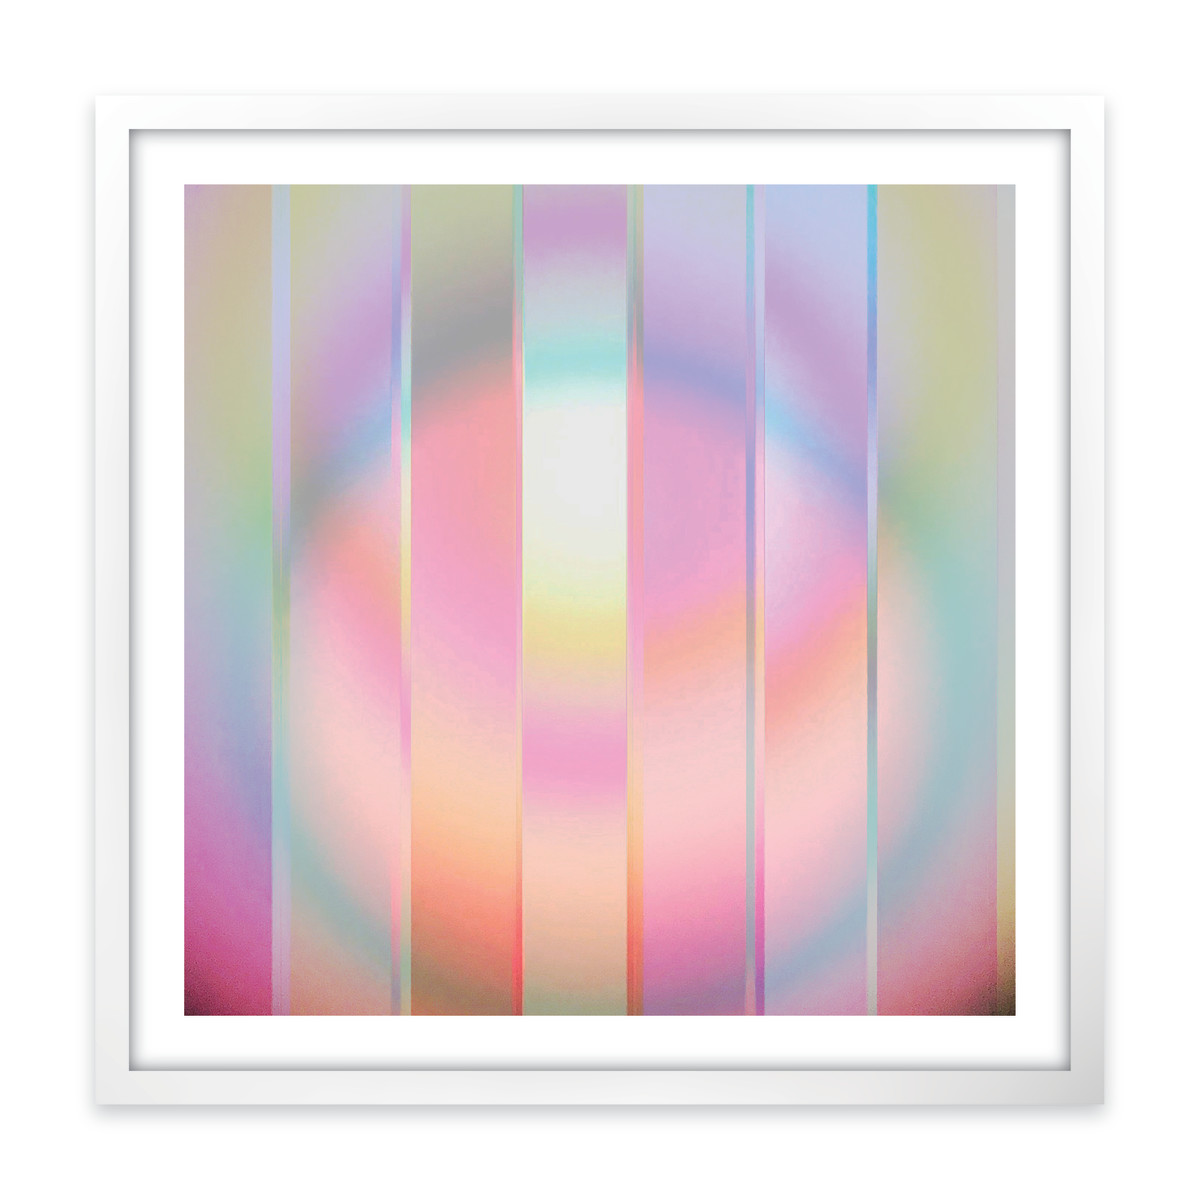 Energy Spheres 8 (framed) by Nicola Parente (Multidisciplinary Artist) 